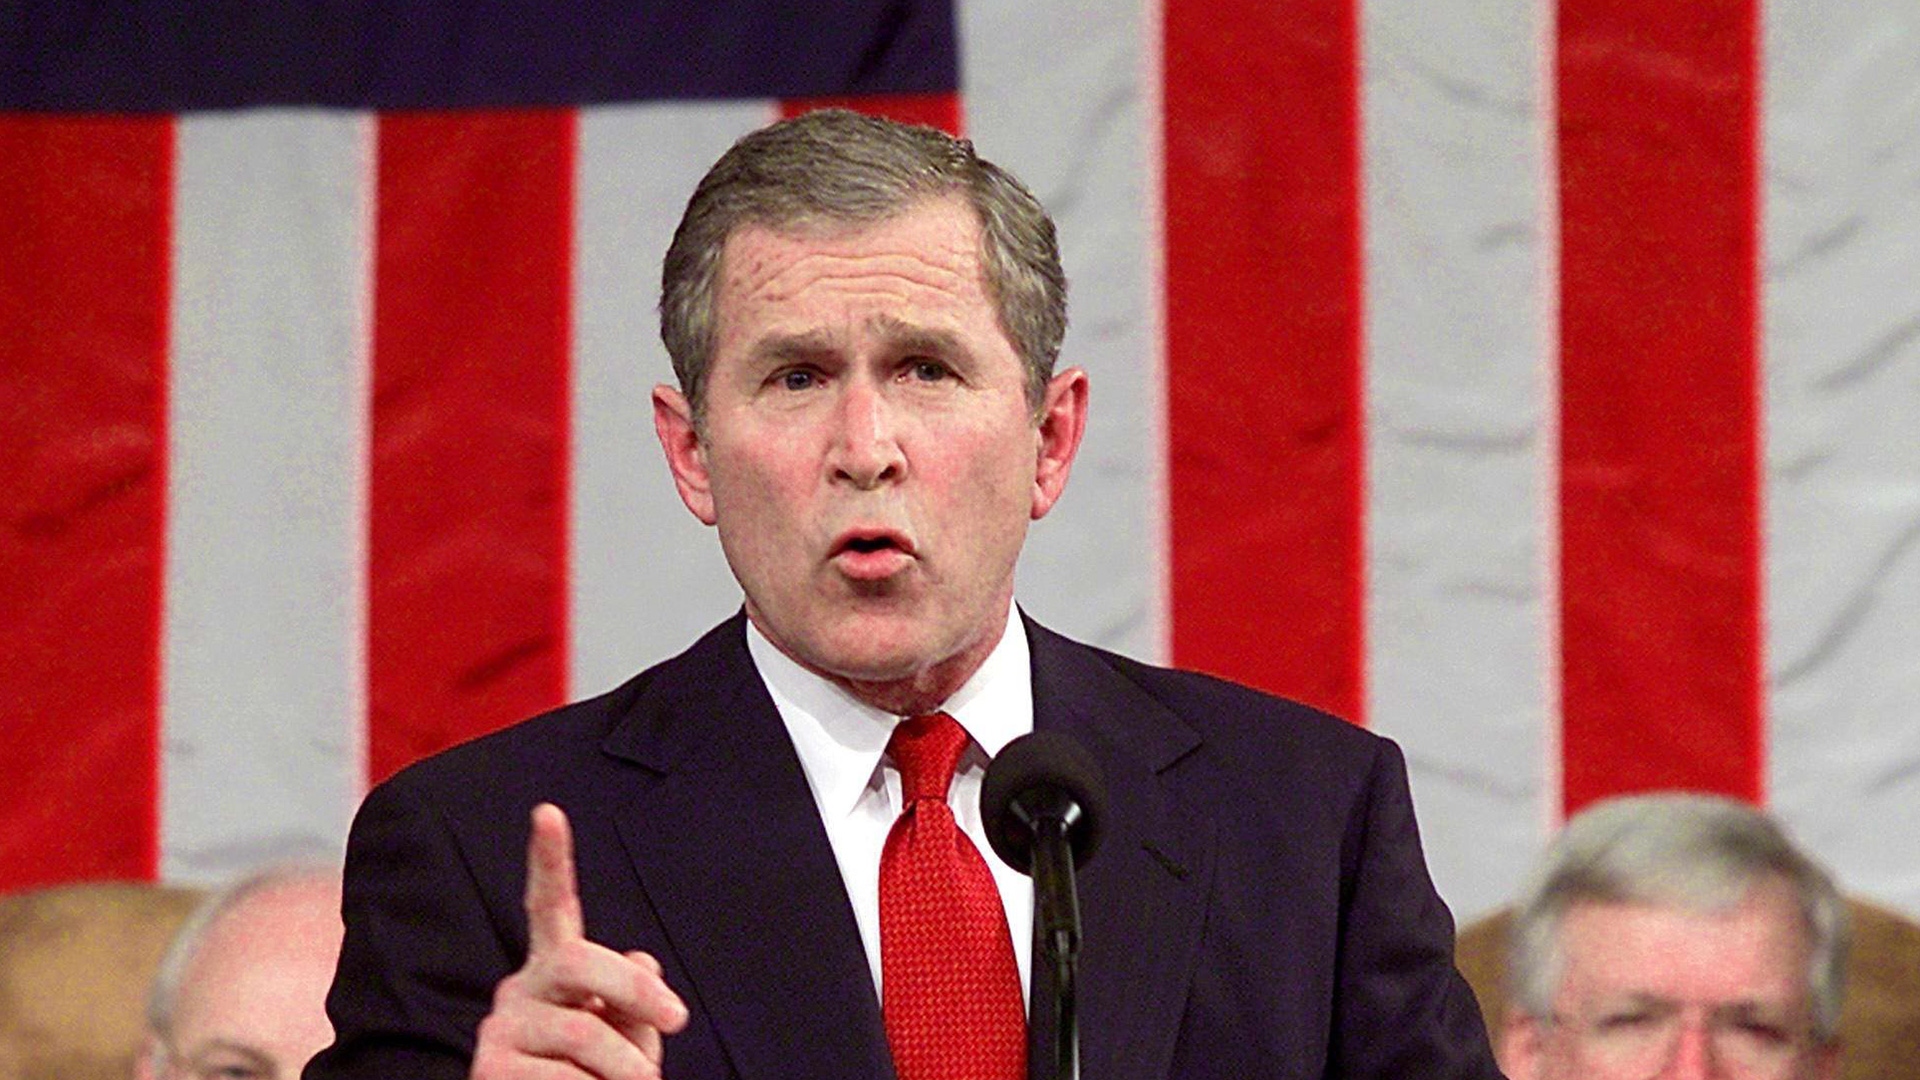 George W. Bush am 27. Februar 2001. | picture-alliance / dpa